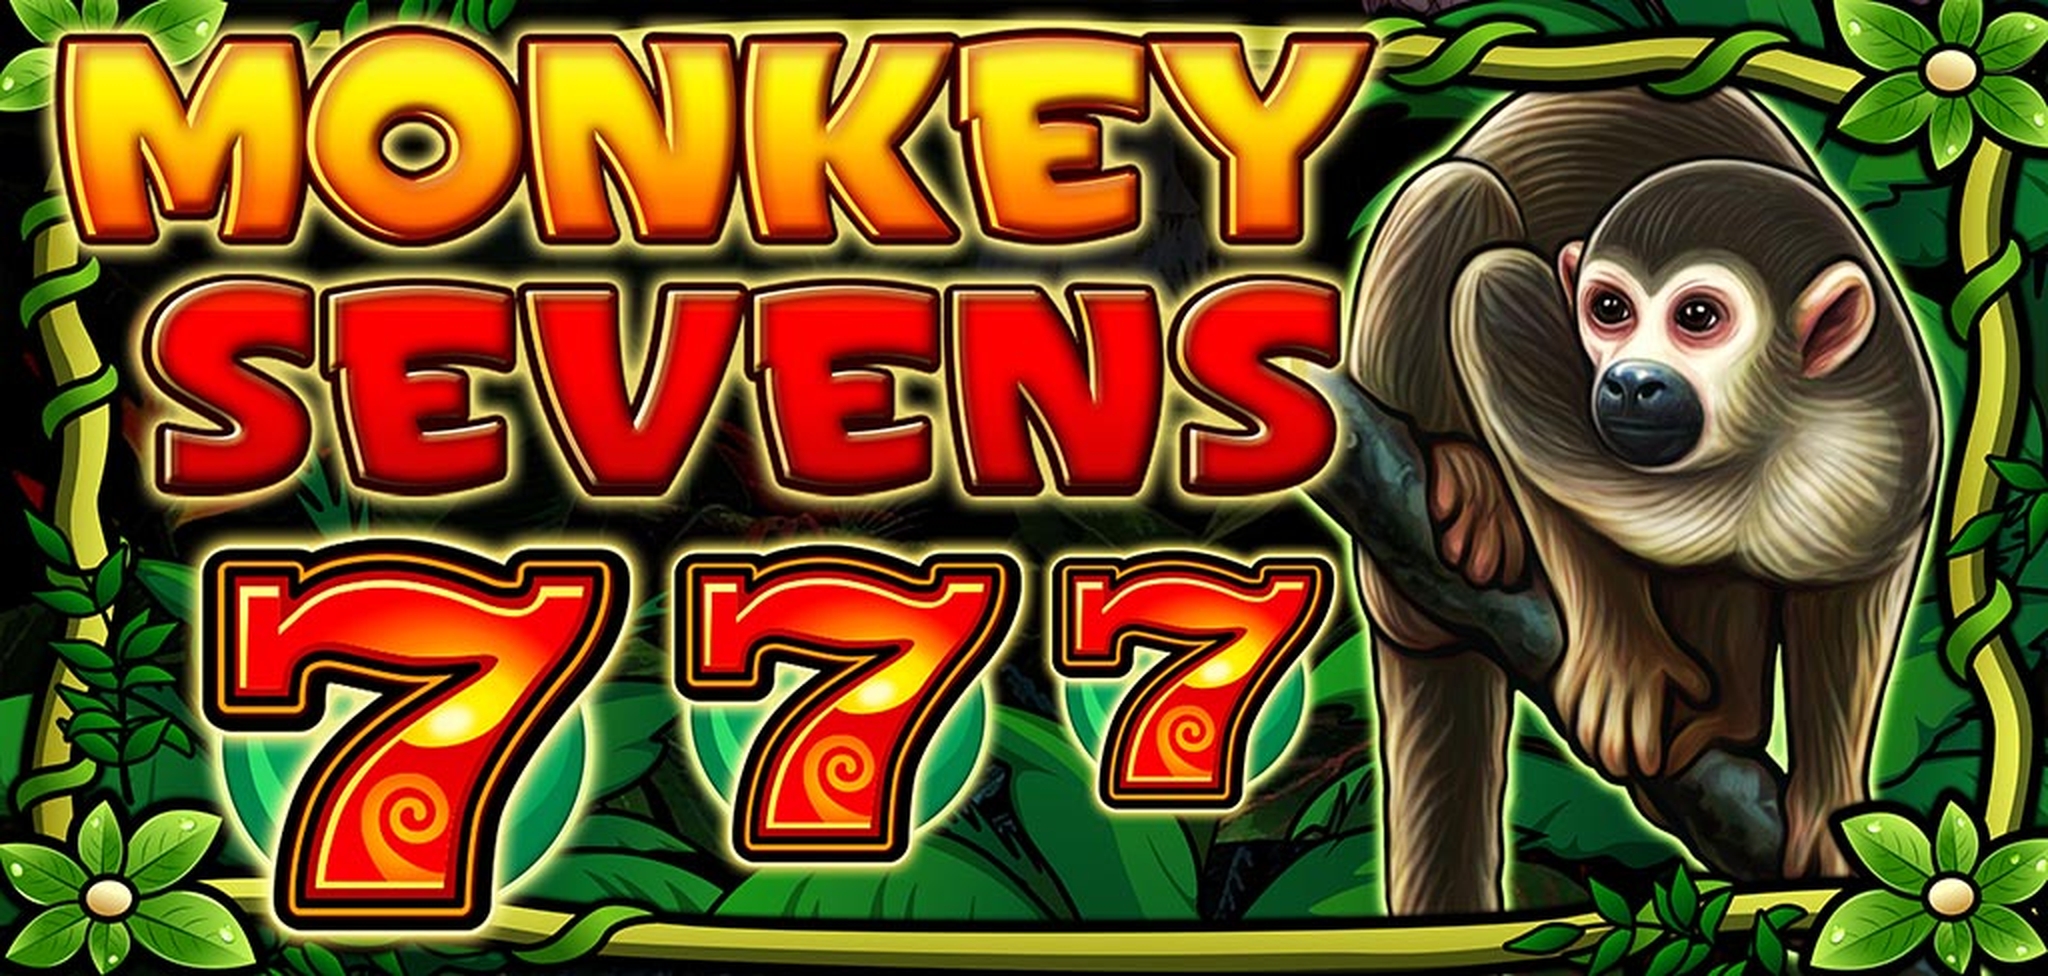 Monkey Sevens demo